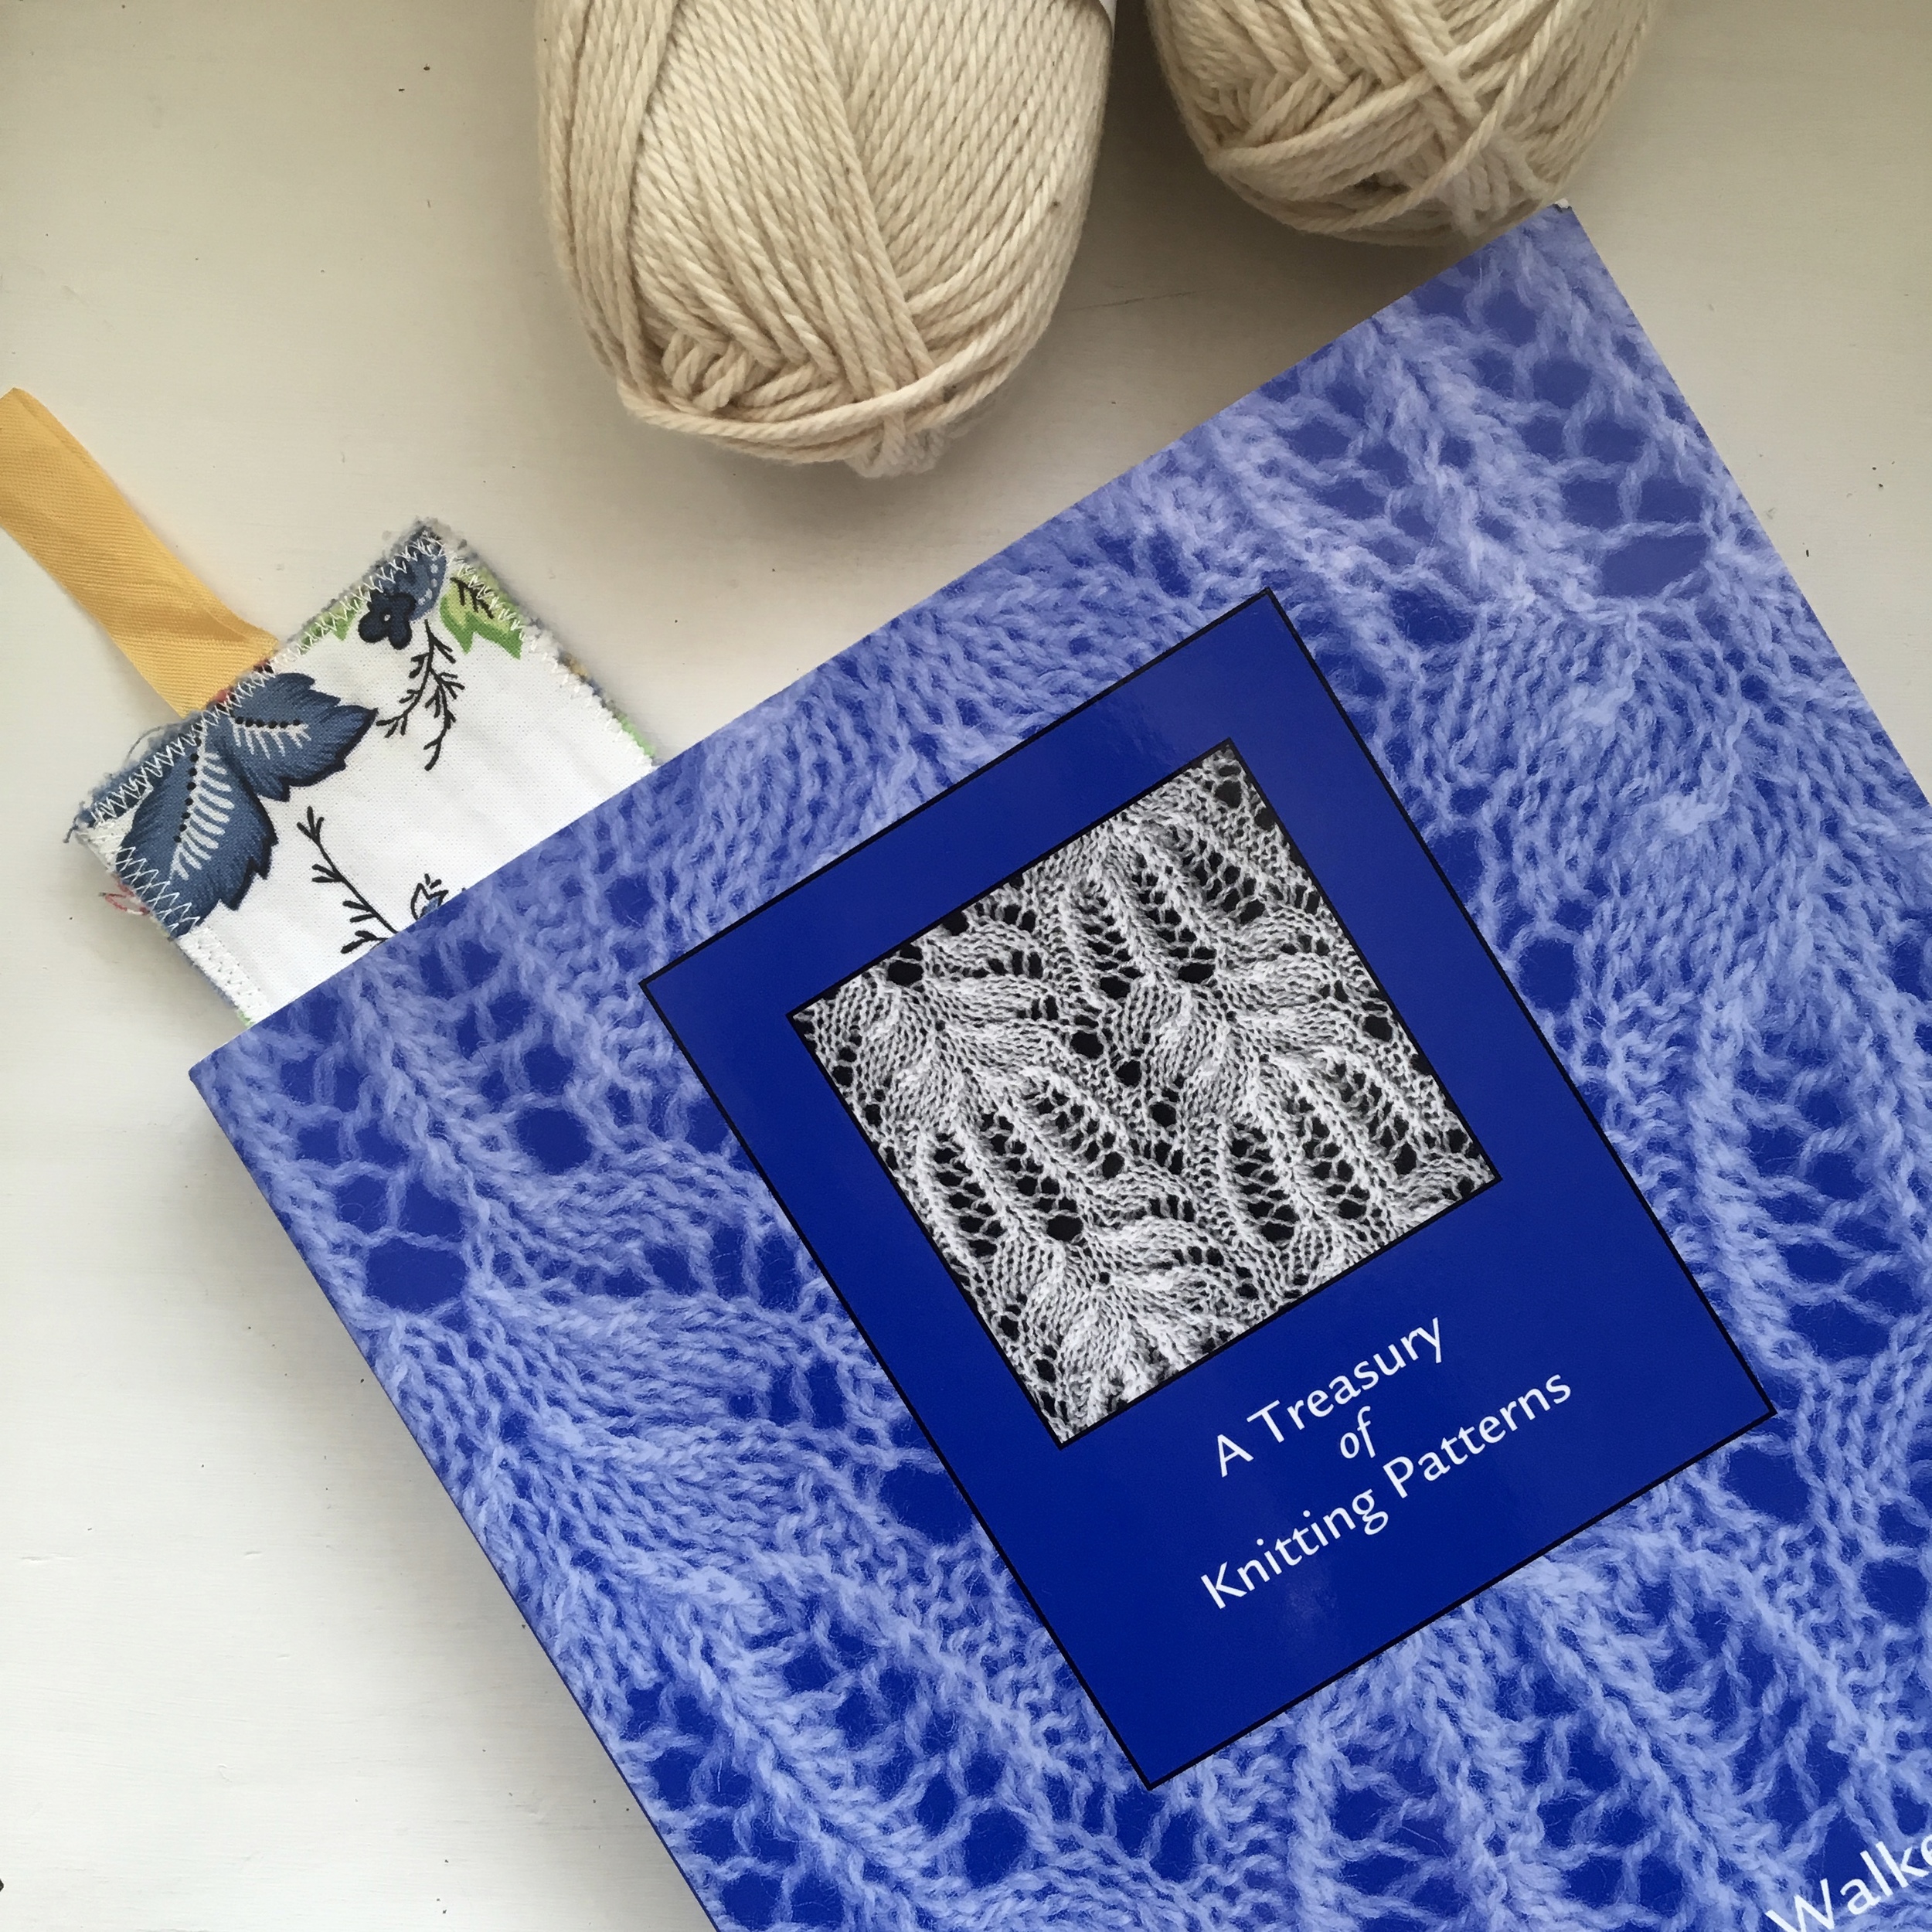 Knitting Books, First Treasury of Knitting Patterns